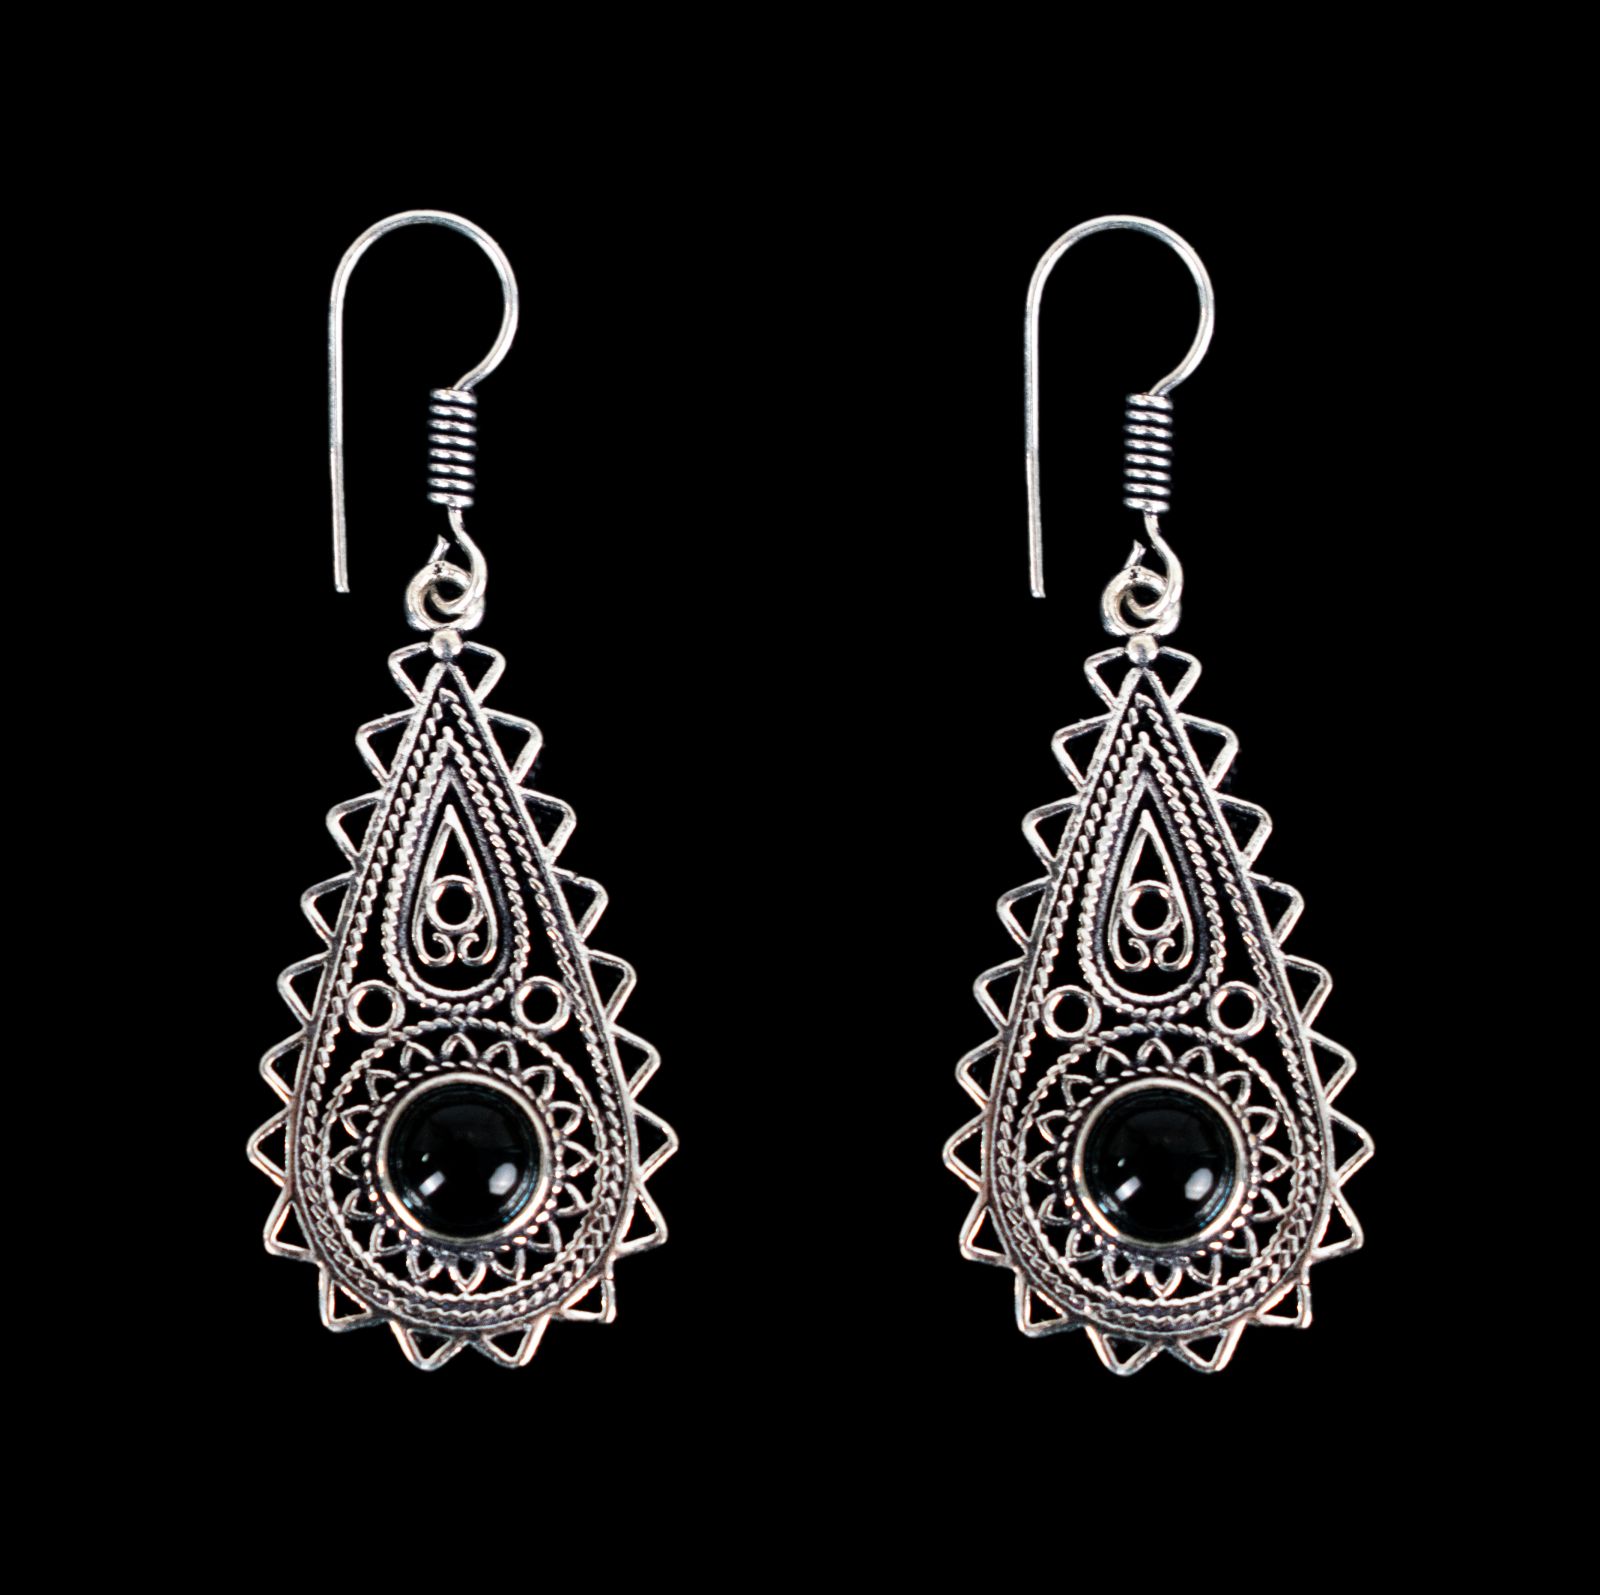 German silver earrings Marilag Black Onyx India